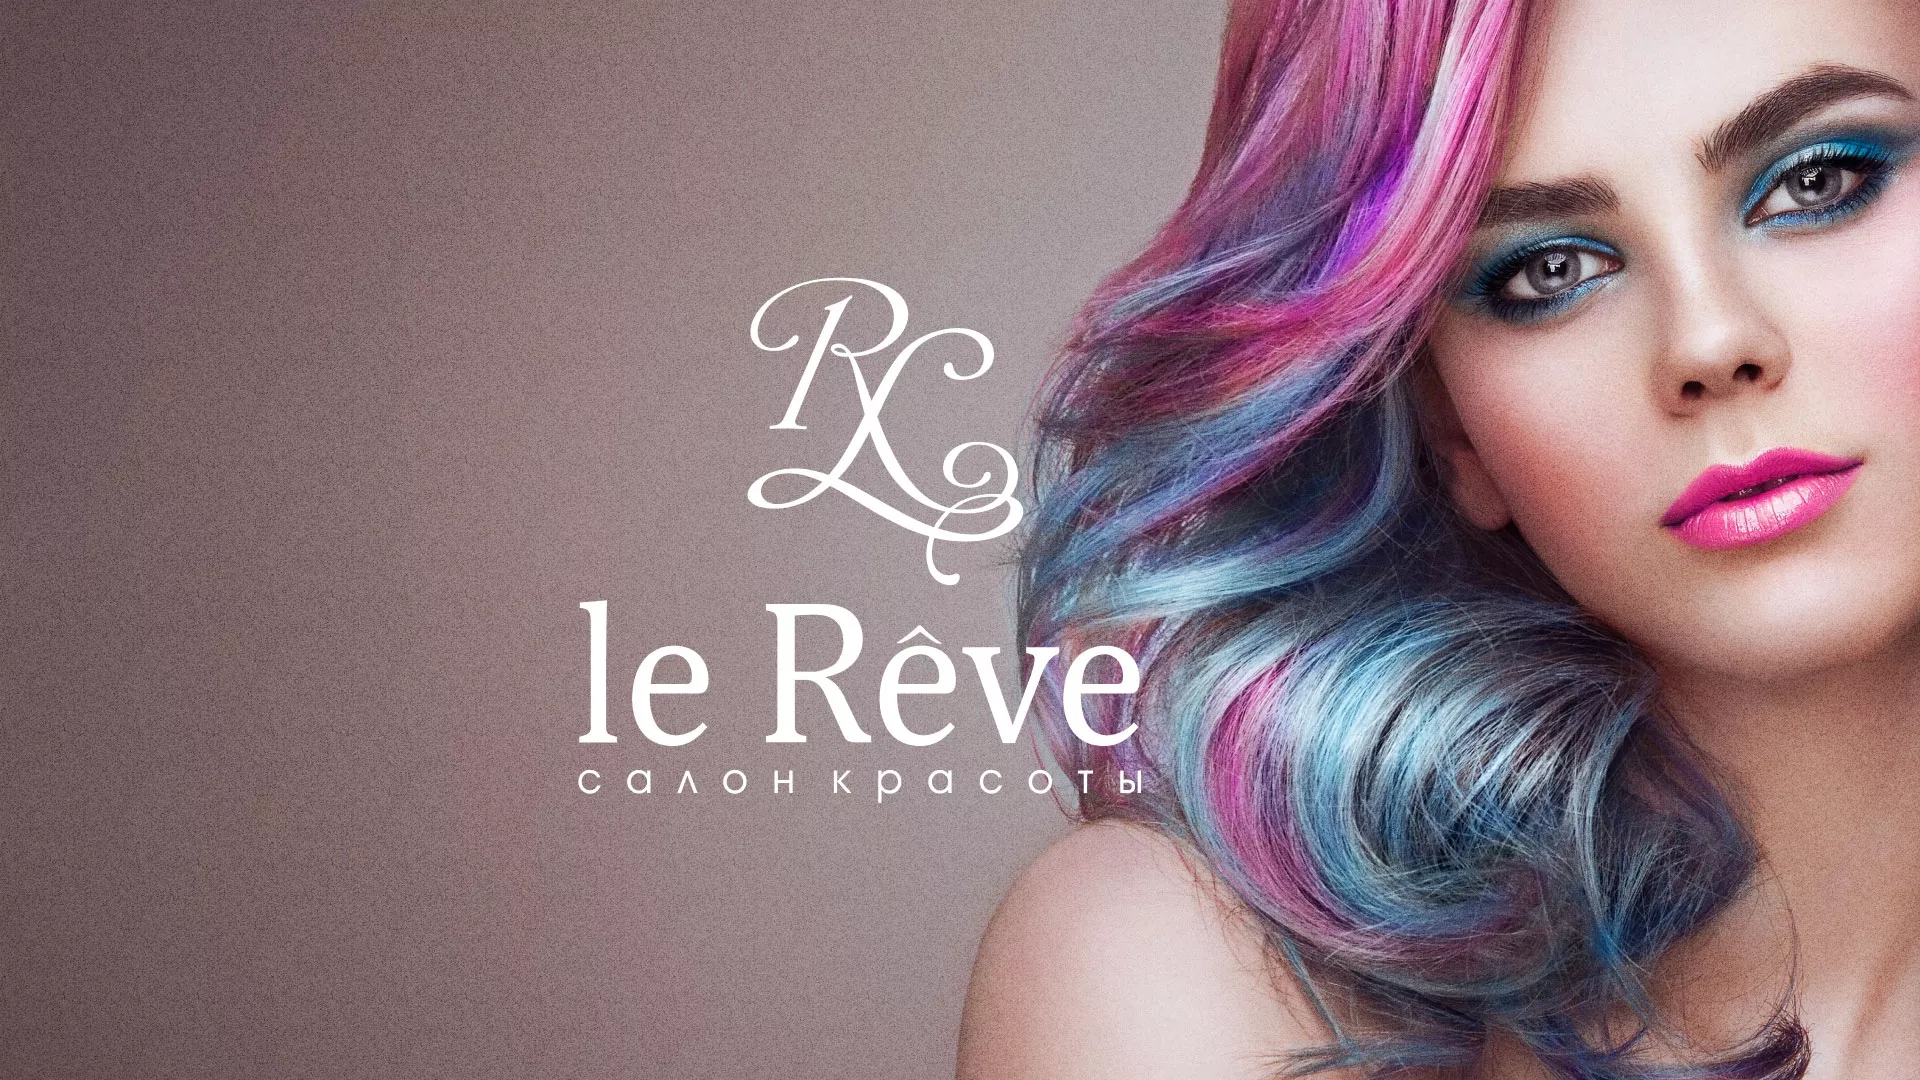 Создание сайта для салона красоты «Le Reve» в Зарайске